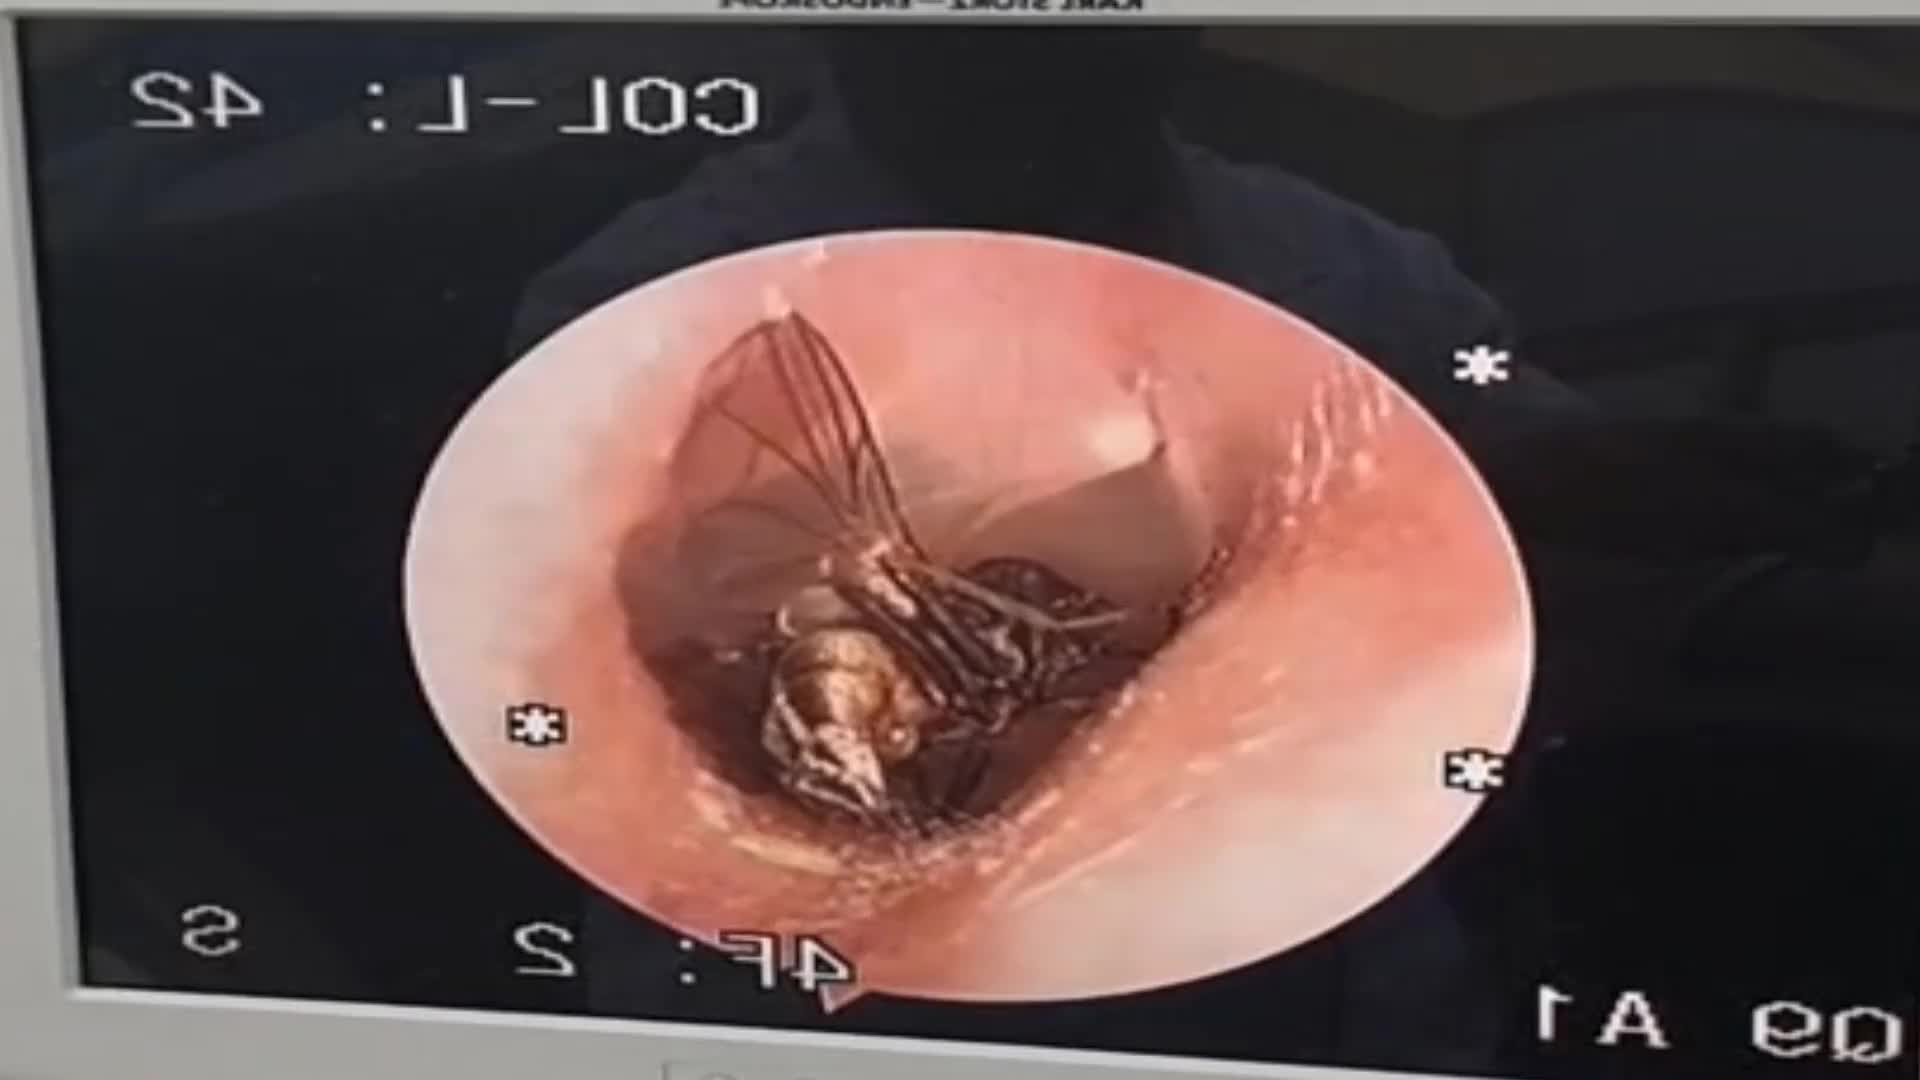 Video - Đau tai đi khám, bác sĩ phát hiện thứ bất ngờ trong tai người đàn ông